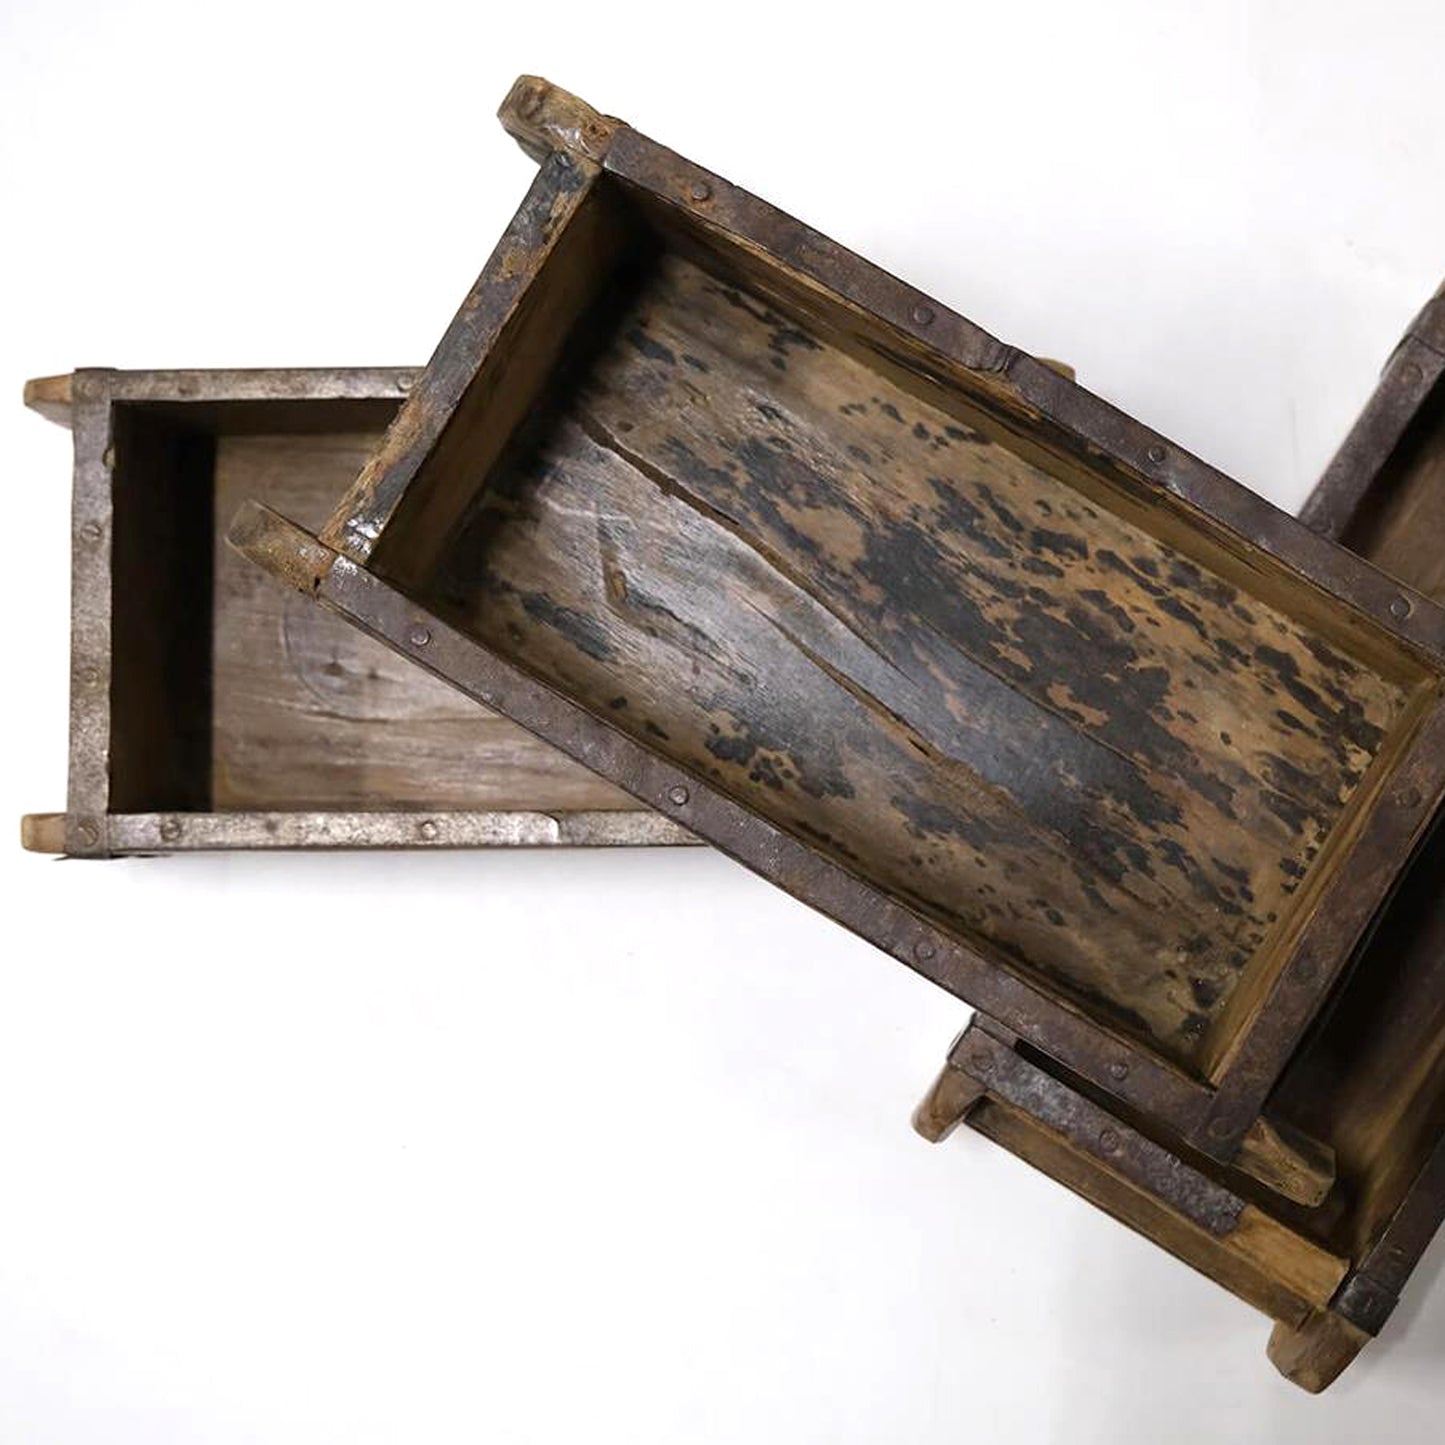 Holzschatulle, Holzkiste "Alte Ziegelform" - gewachst 30 cm